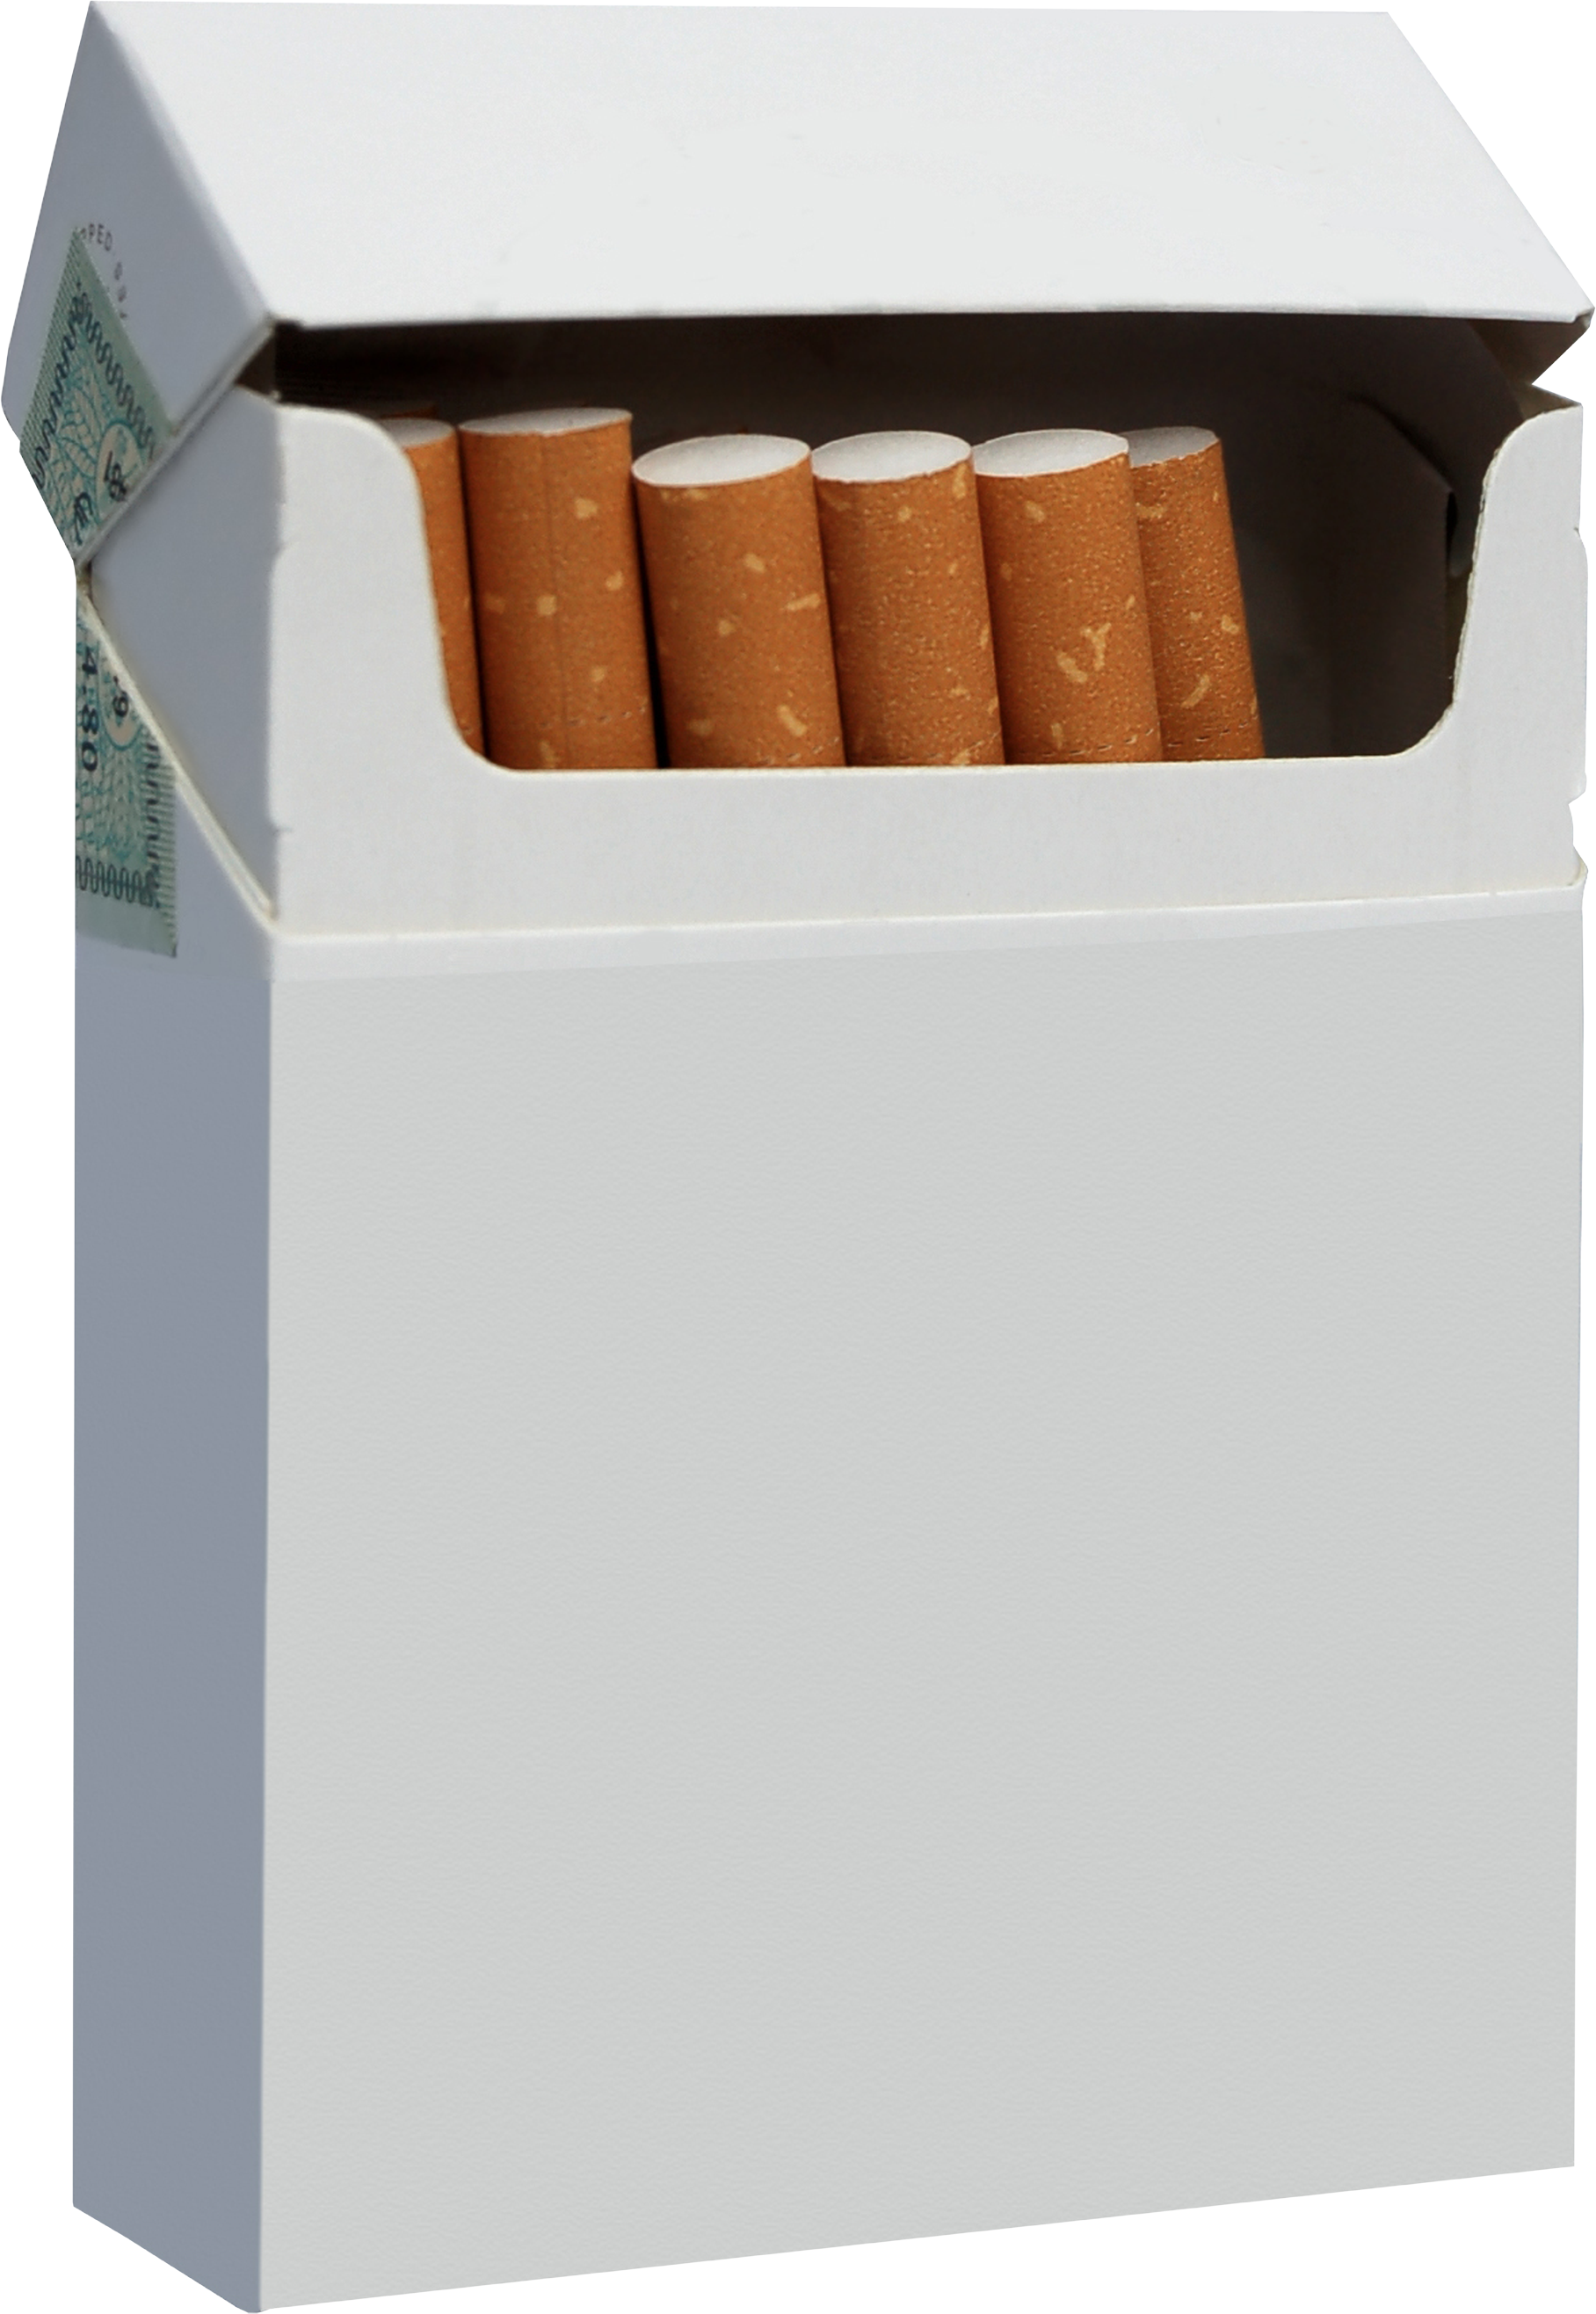 Một bao thuốc lá